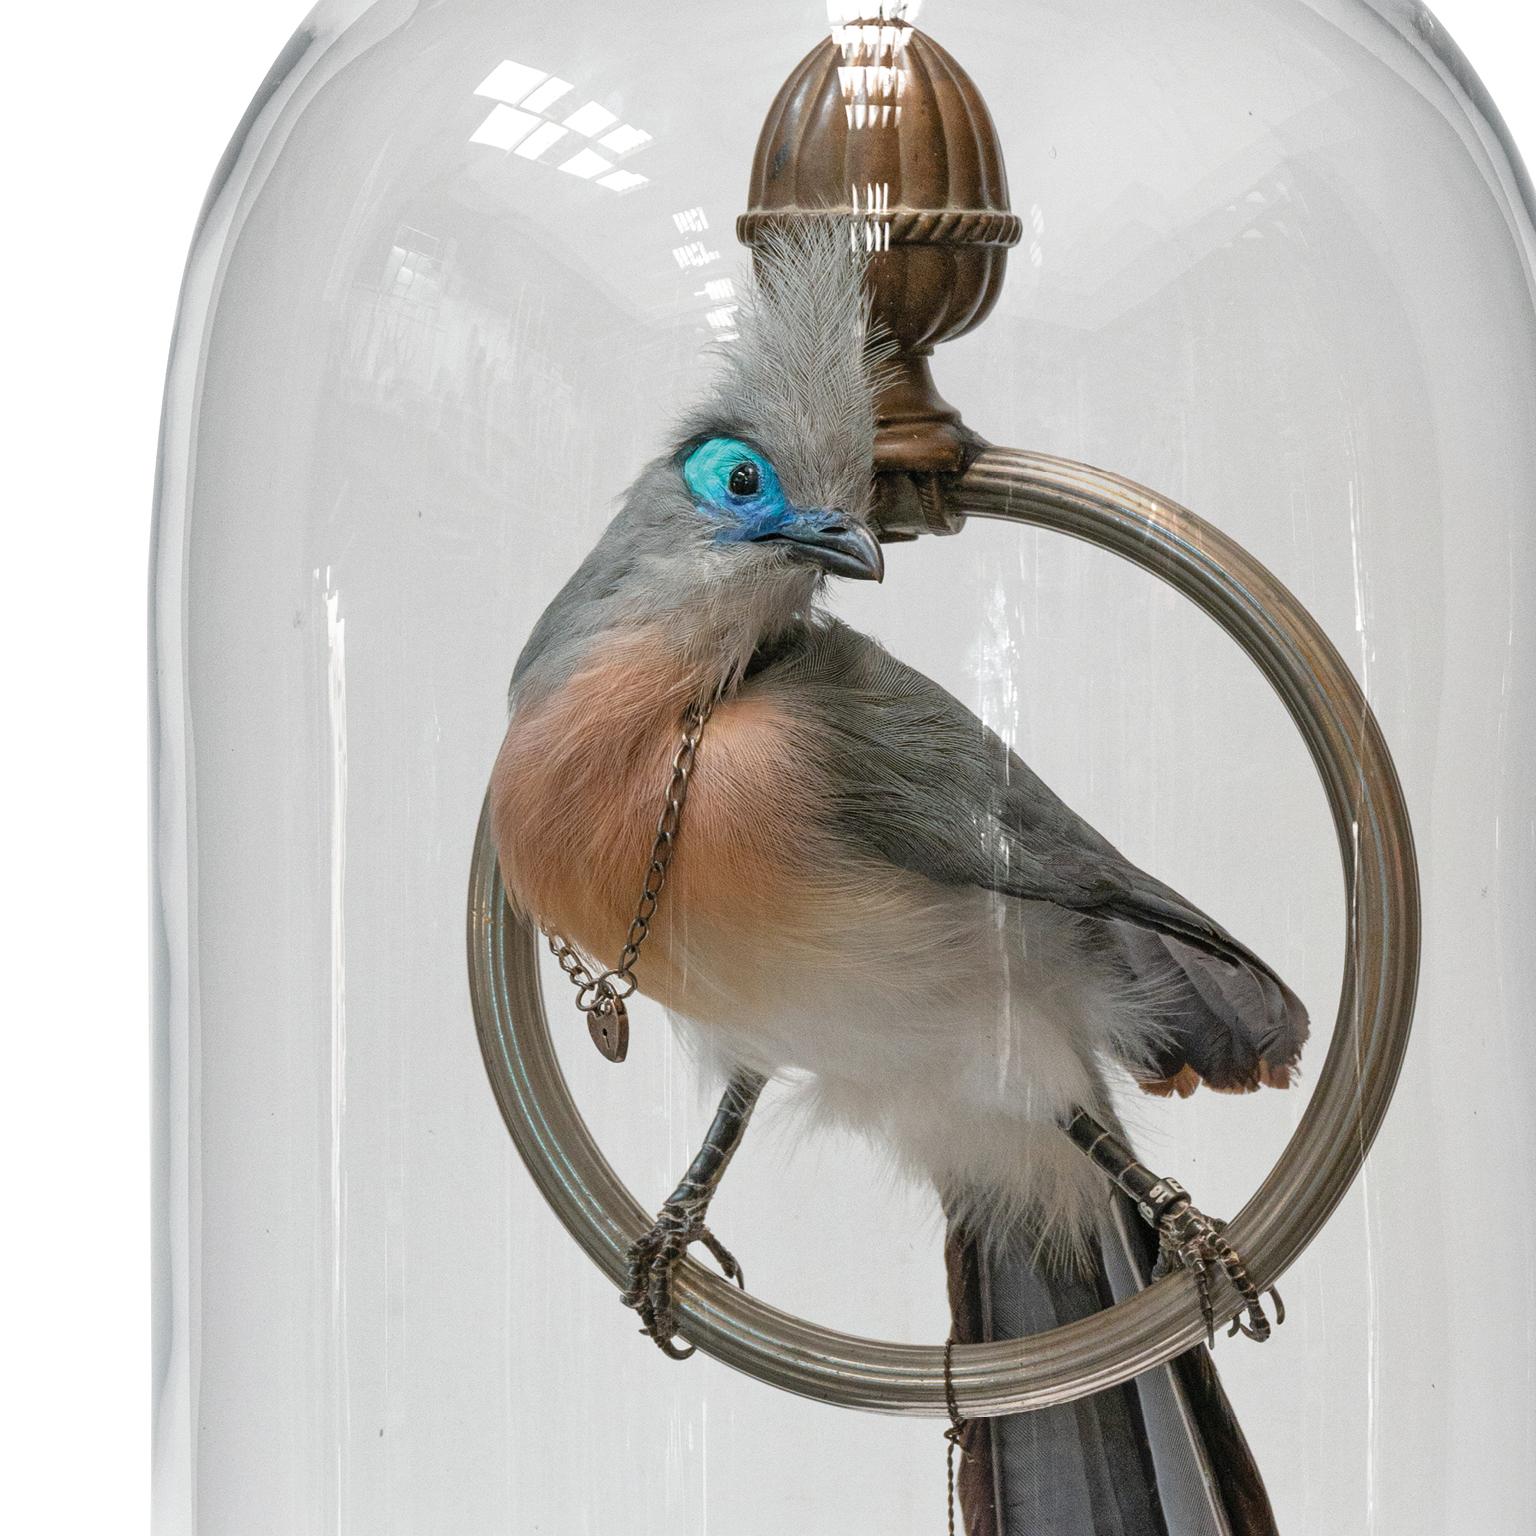 Cet oiseau gracieux (Coua cristata) a un visage éblouissant. Des taches turquoise et bleues extrêmement brillantes le font remarquer à Madagascar. Elle porte un collier ancien avec une petite serrure en forme de cœur. Nous avons découvert une